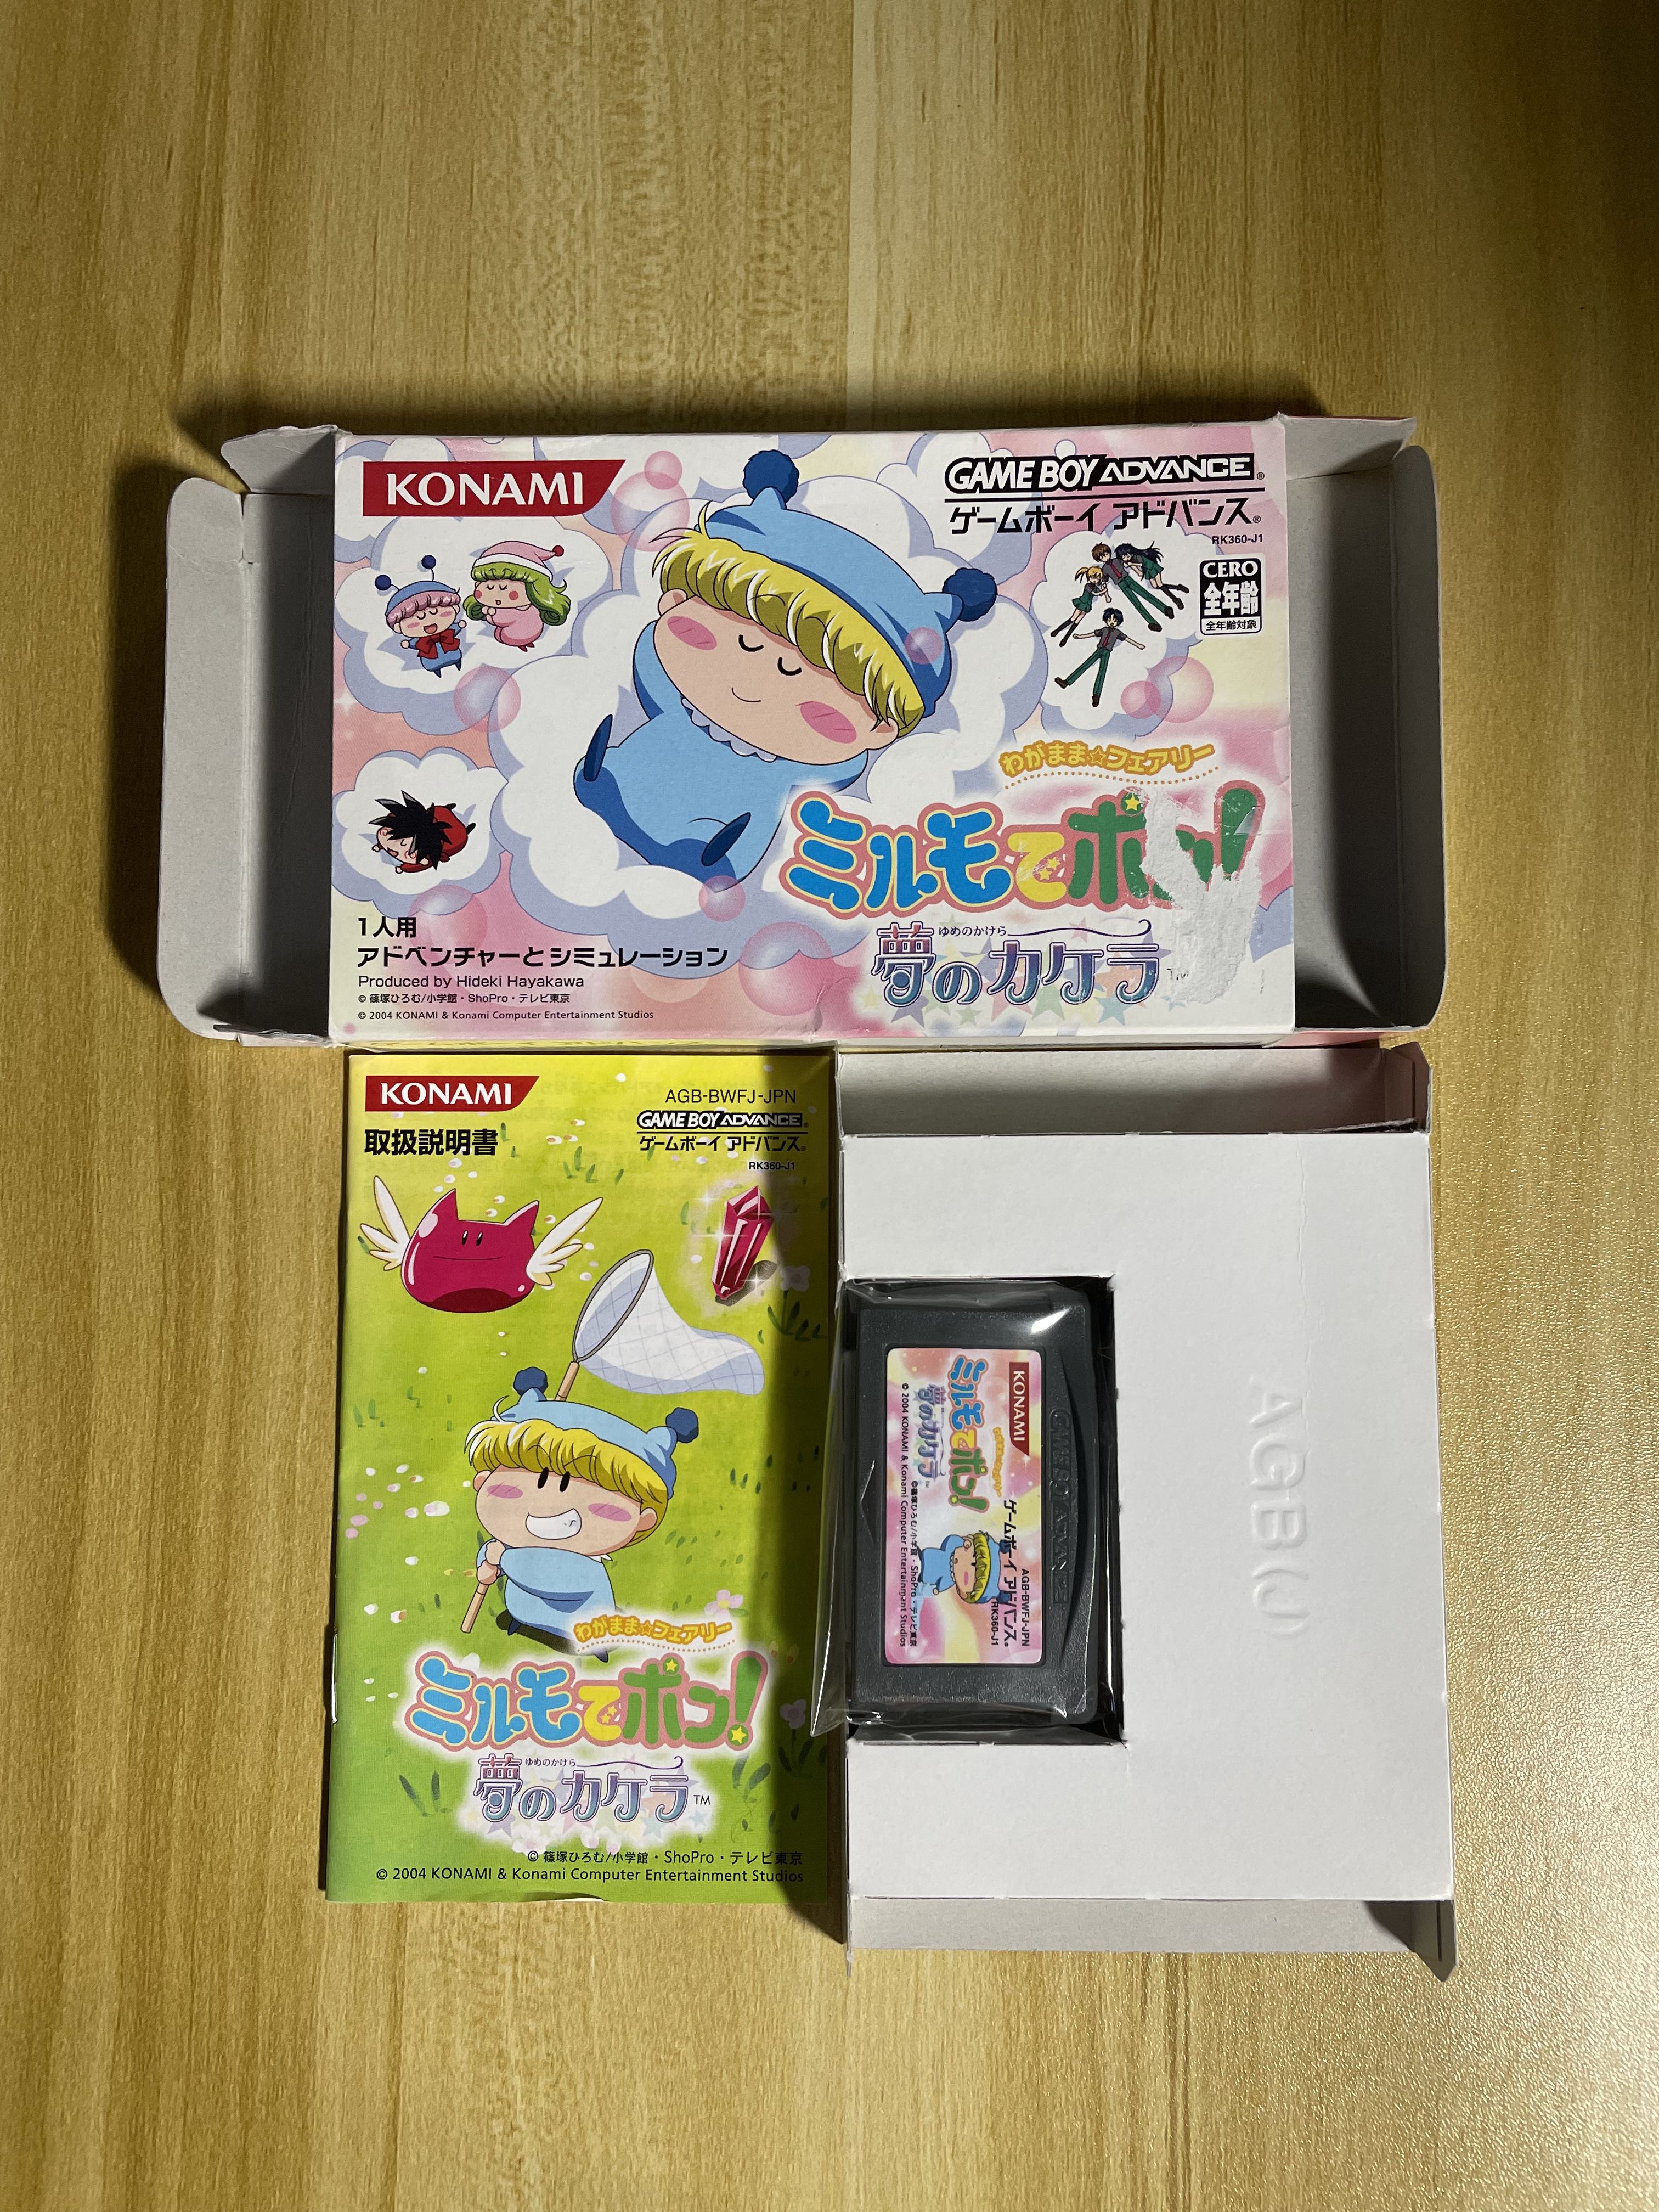 中古絕版GBA Gameboy Advance 任性妖精米諾-夢的碎片わがまま